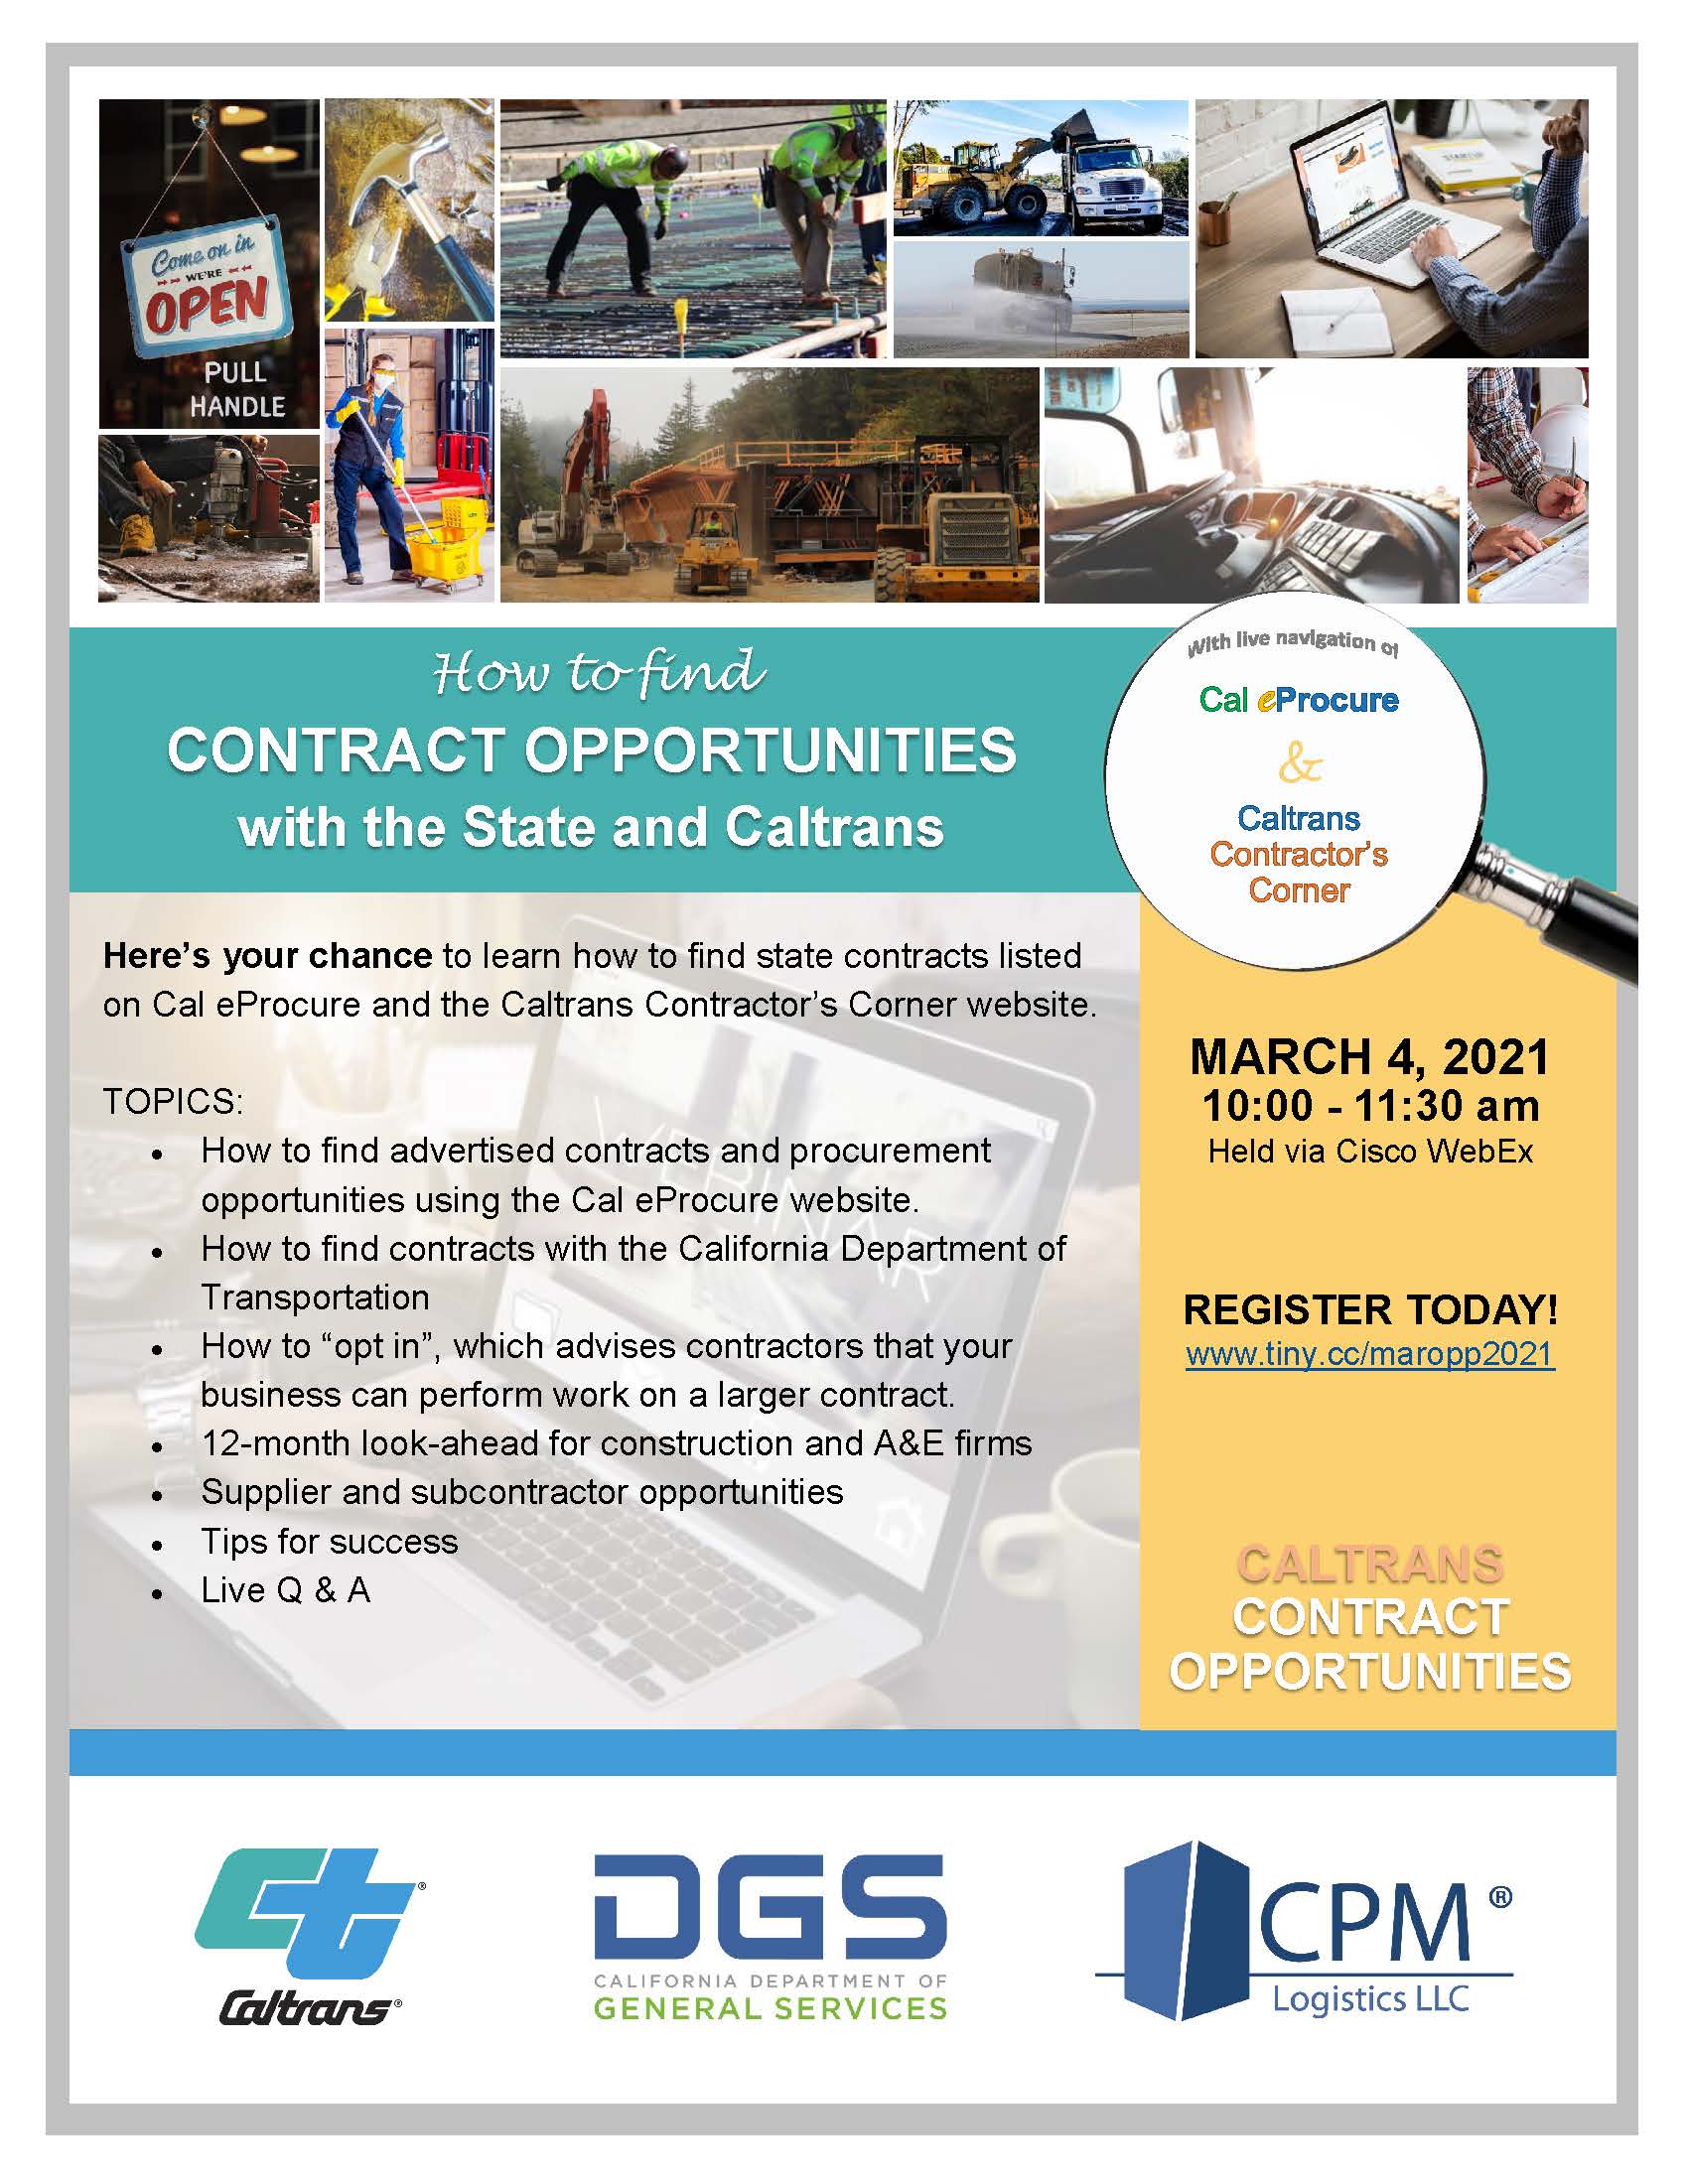 Caltrans Contractor Opportunities Flyer